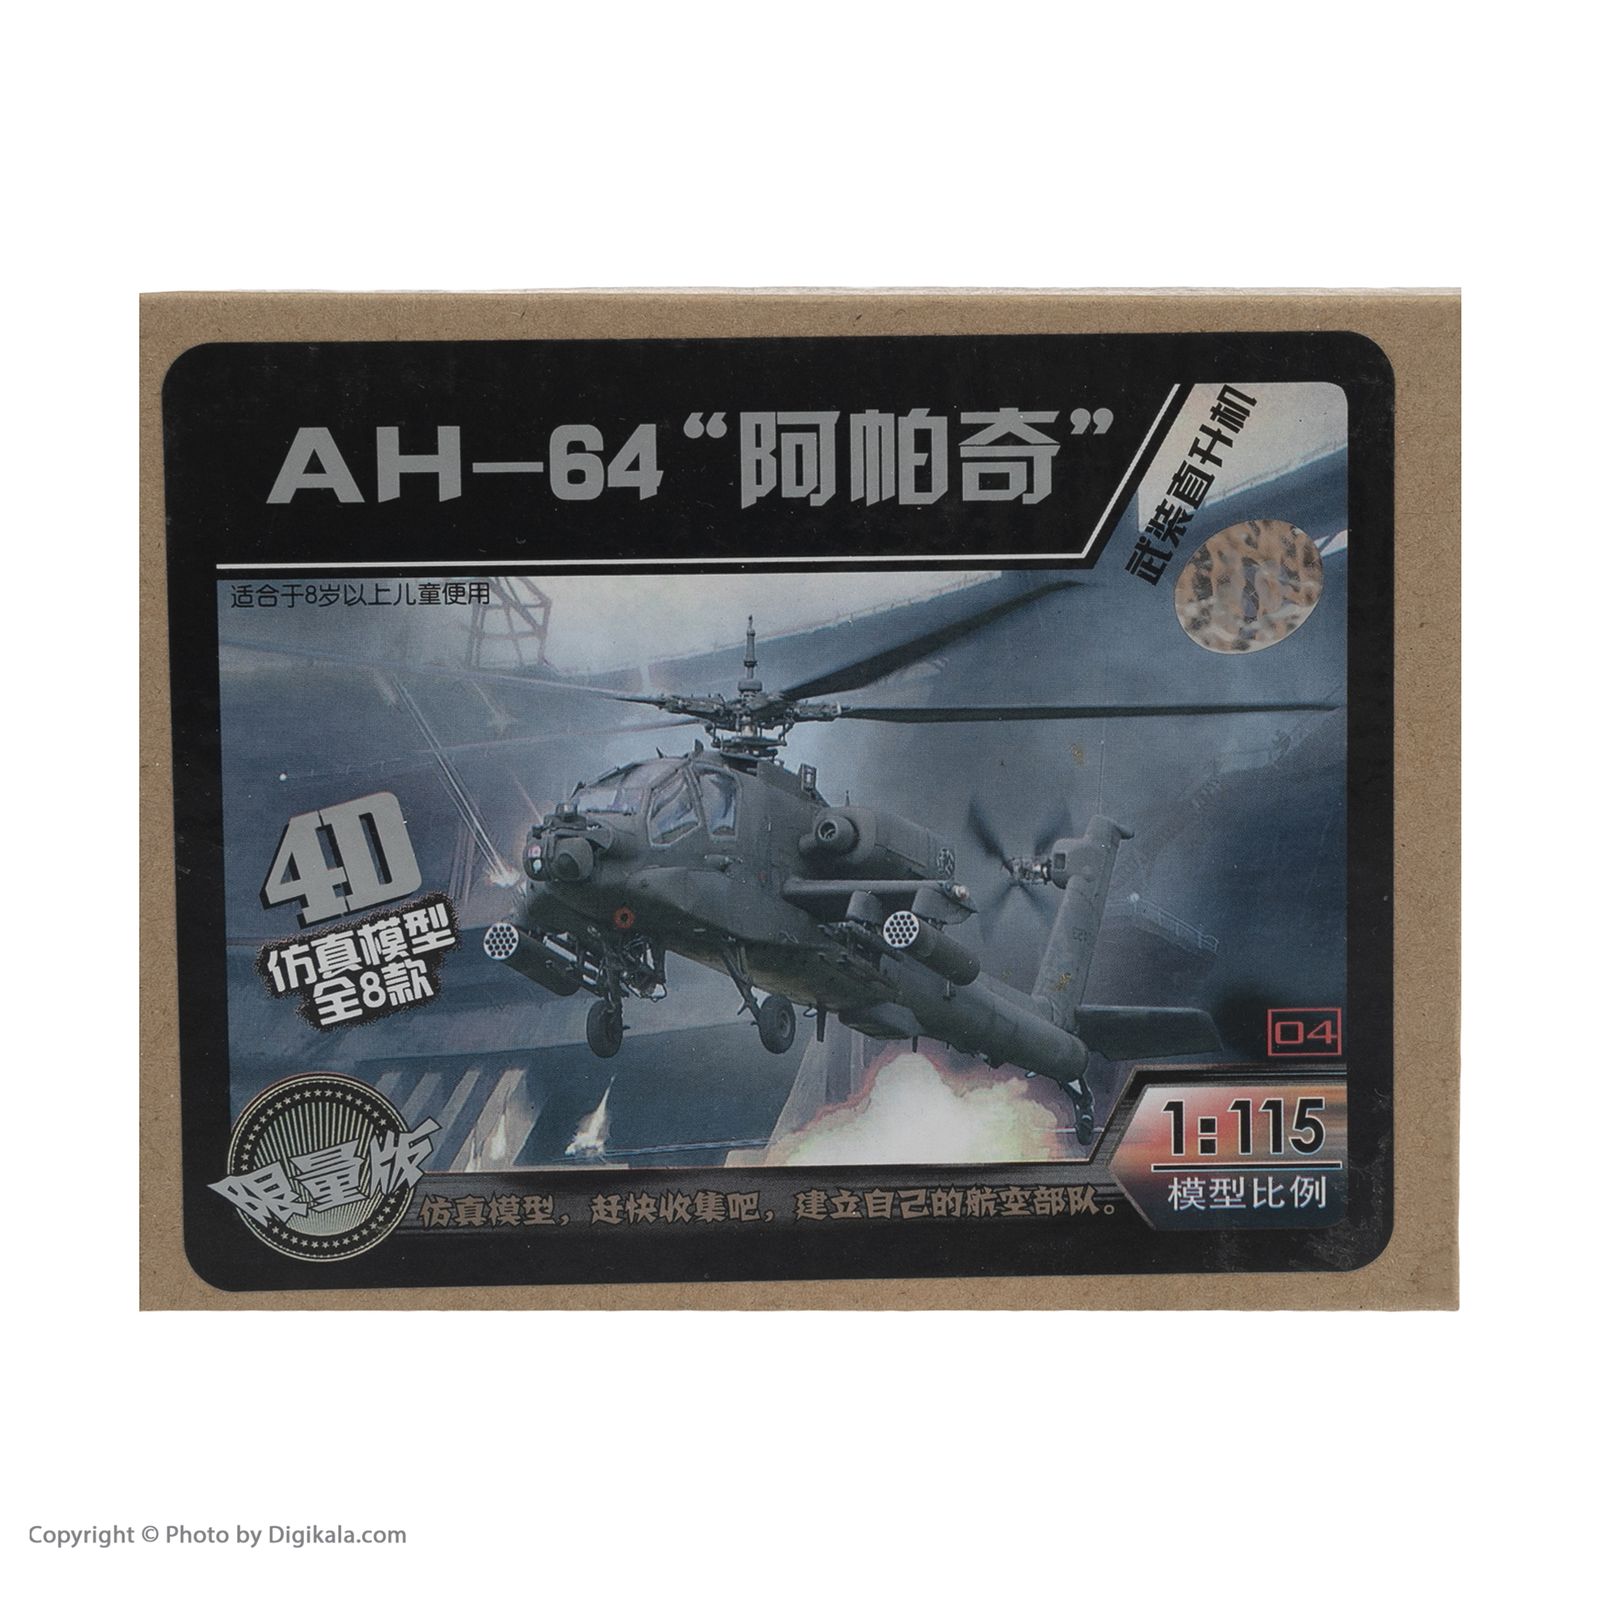  ساختنی طرح هلی کوپتر جنگنده مدل آپاچی AH-64 کد 3651 -  - 2